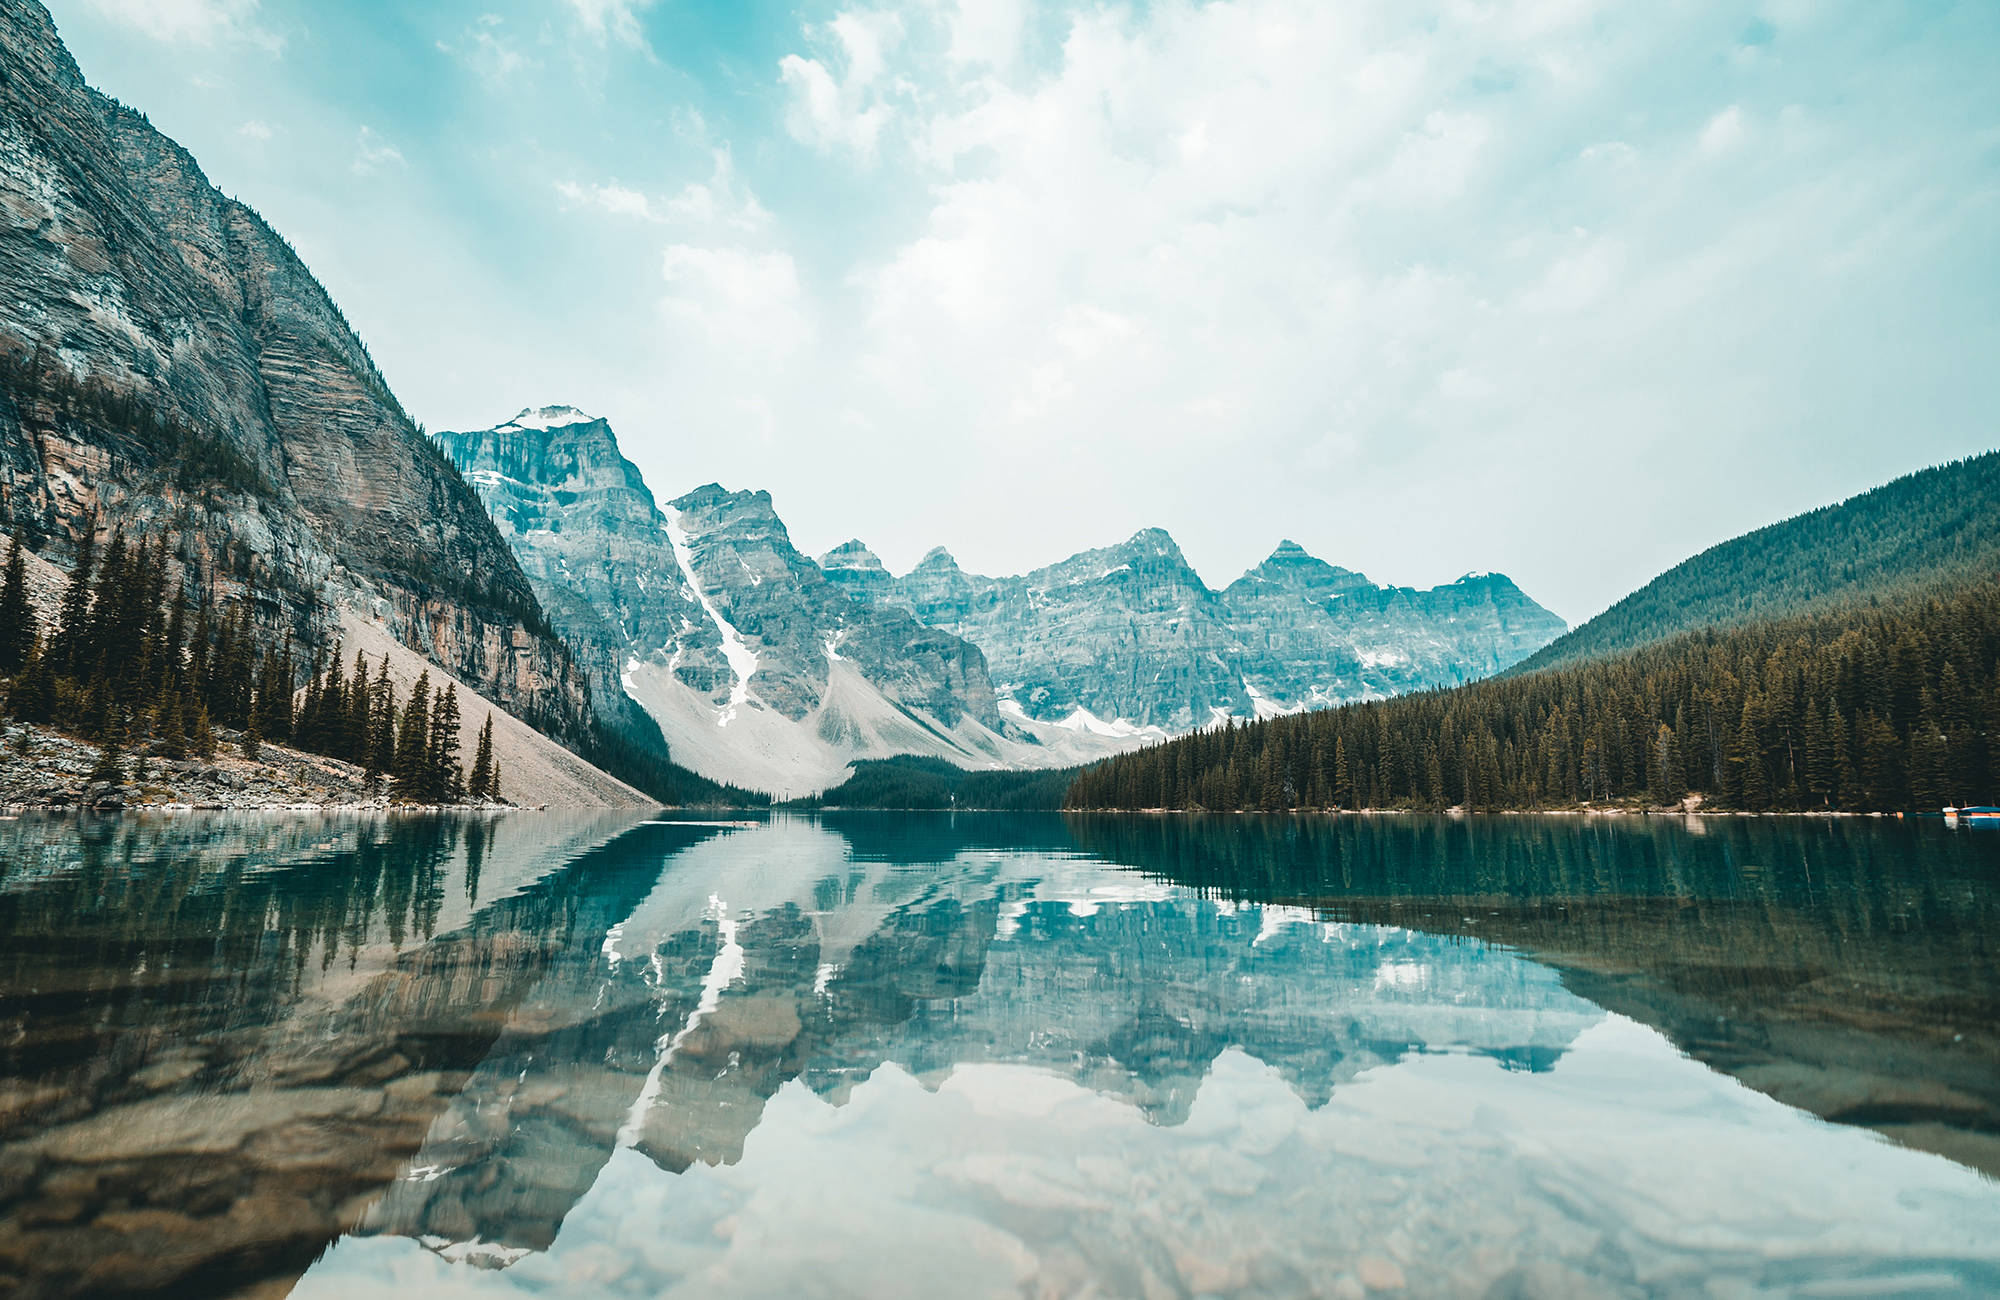 När du inte studerar i Kanada kan du åka till bergen och detta kristallklara vatten